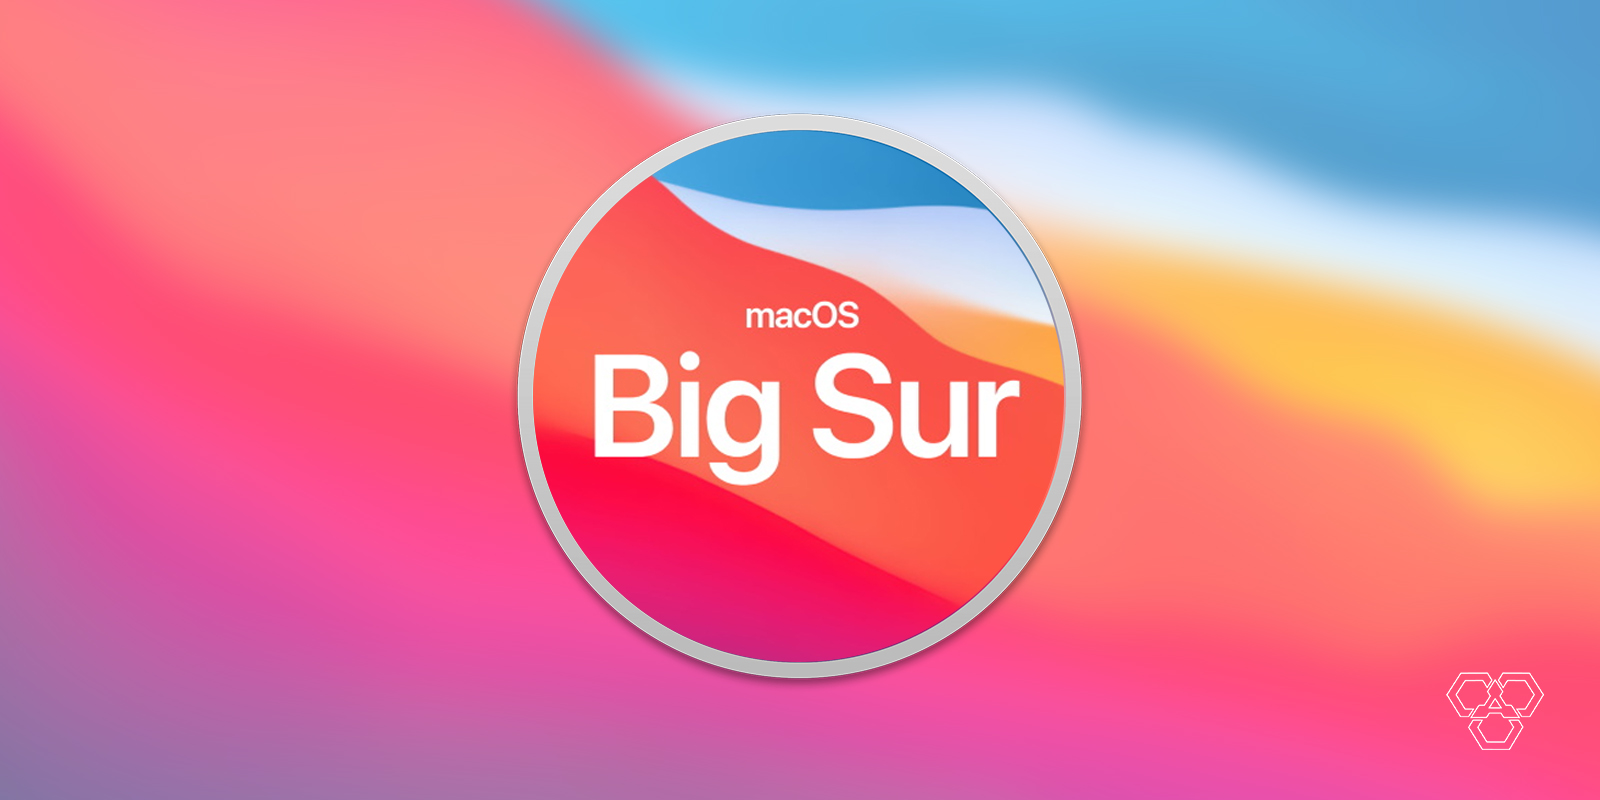 macOS Big Sur image